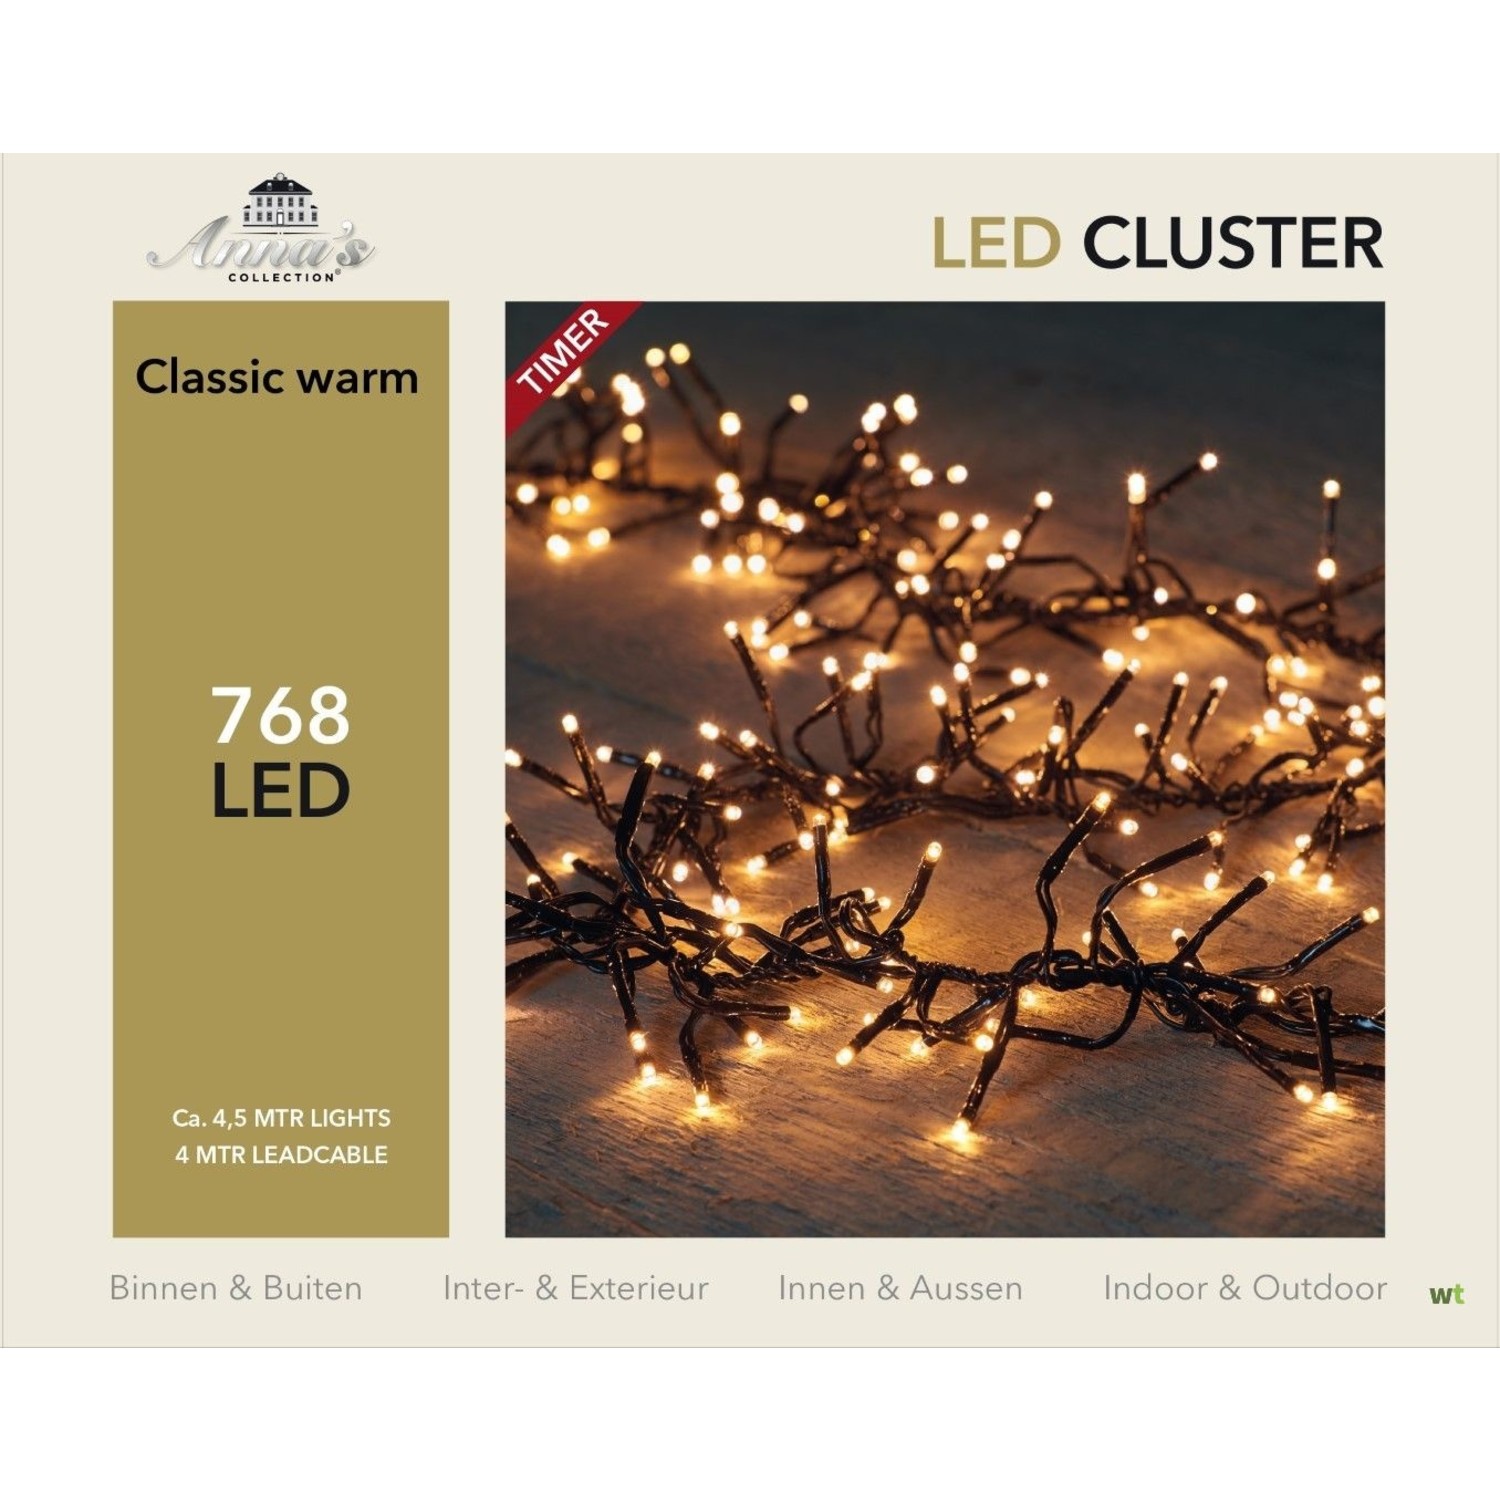 Deskundige Ijdelheid Renaissance Anna's Collection clusterverlichting klassiek warm 768 LED 4,5 m - Uw Kerst  Specialist